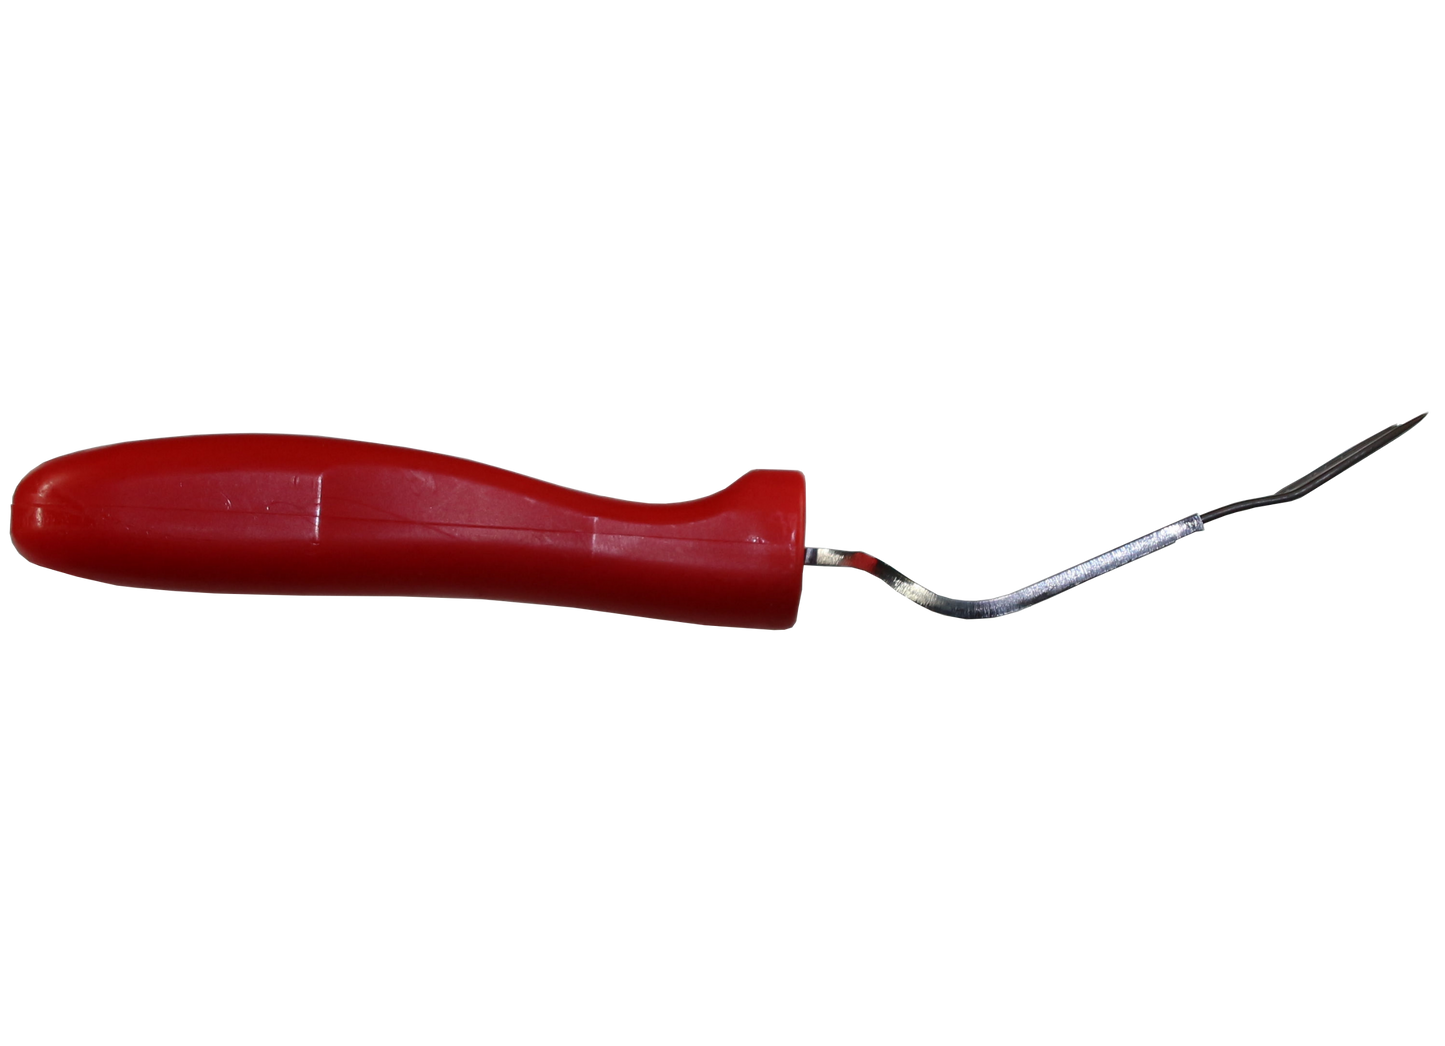 Entdeckelungsgabel mit rotem Kunststoffgriff und 19 Nadeln aus Edelstahl